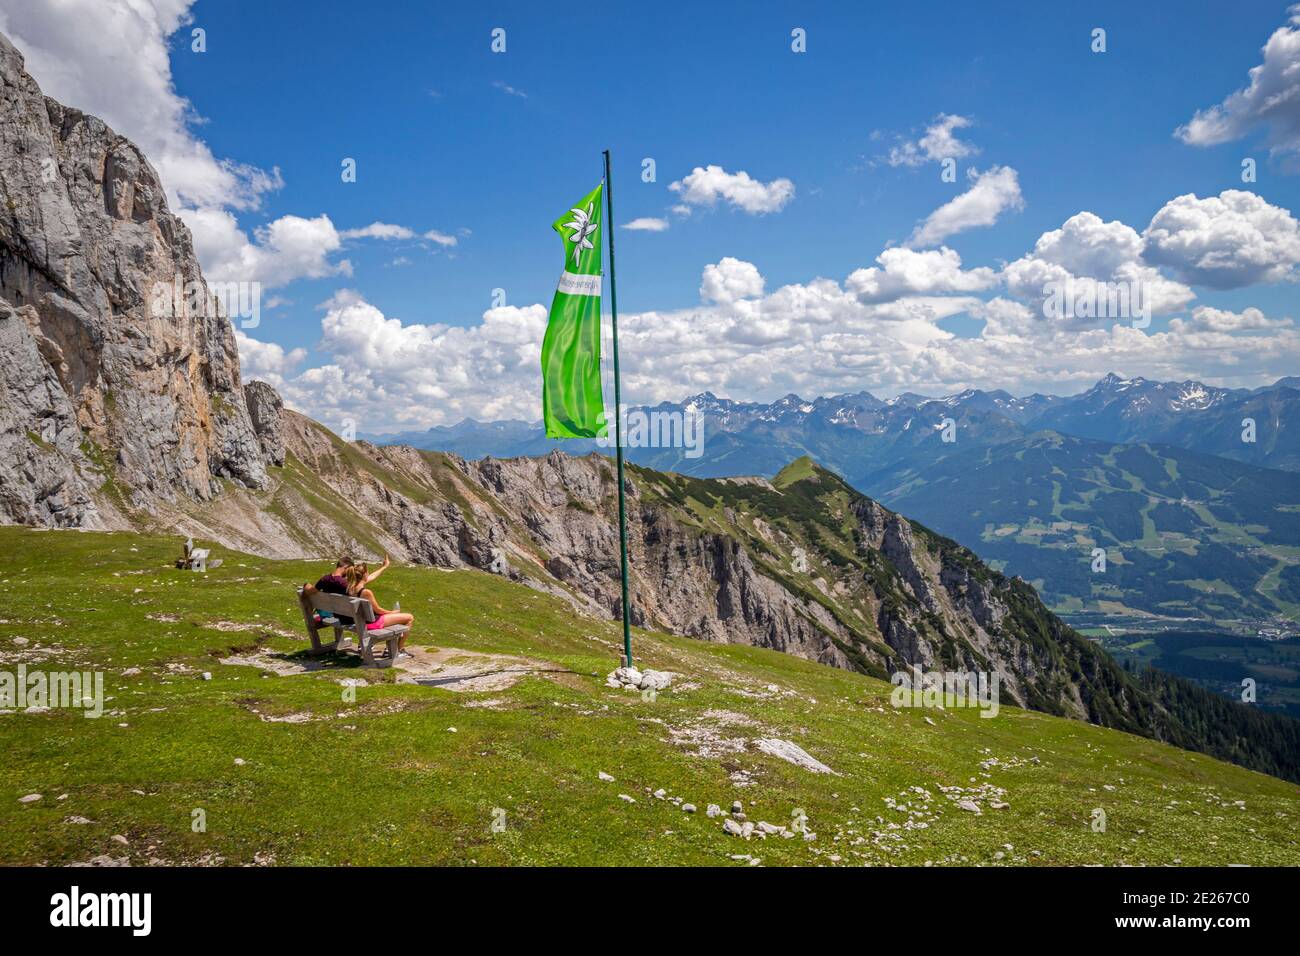 Young couple sitting on bench next to green flag of the Austrian Alpine Club / Österreichischer Alpenverein, Upper-Styria / Steiermark, Austria Stock Photo